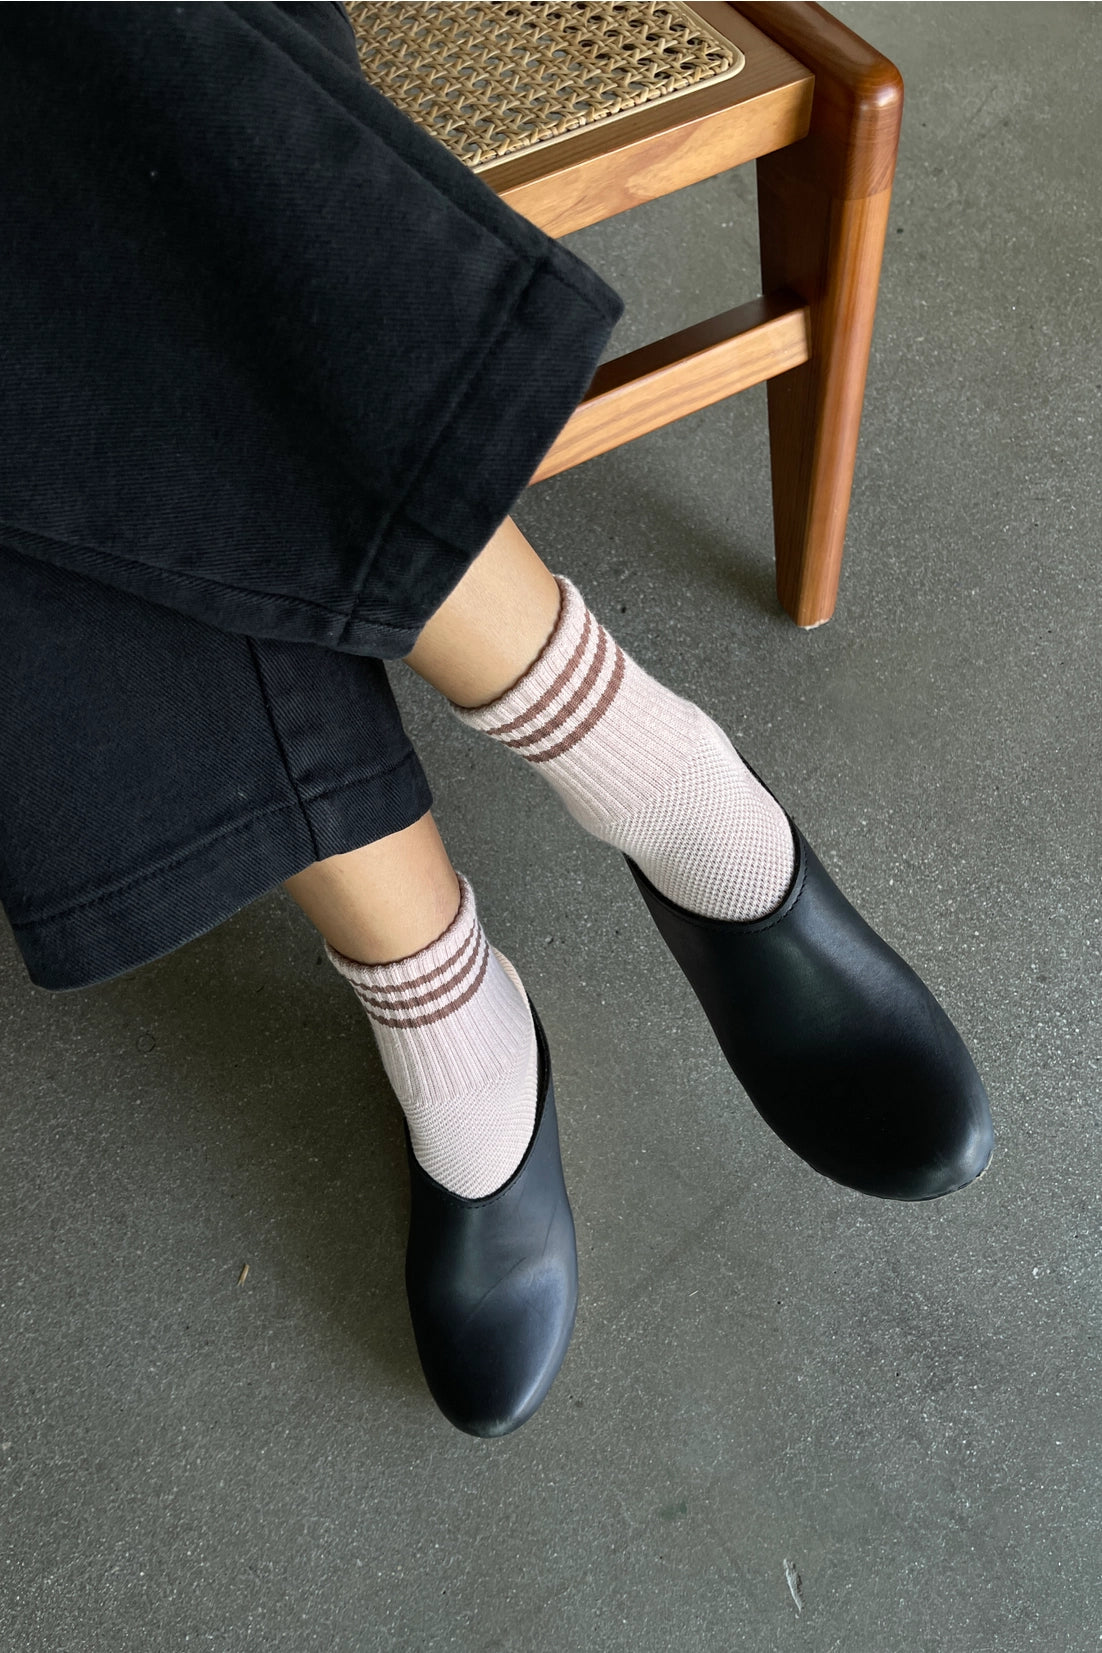 Girlfriend Socks | Bellini